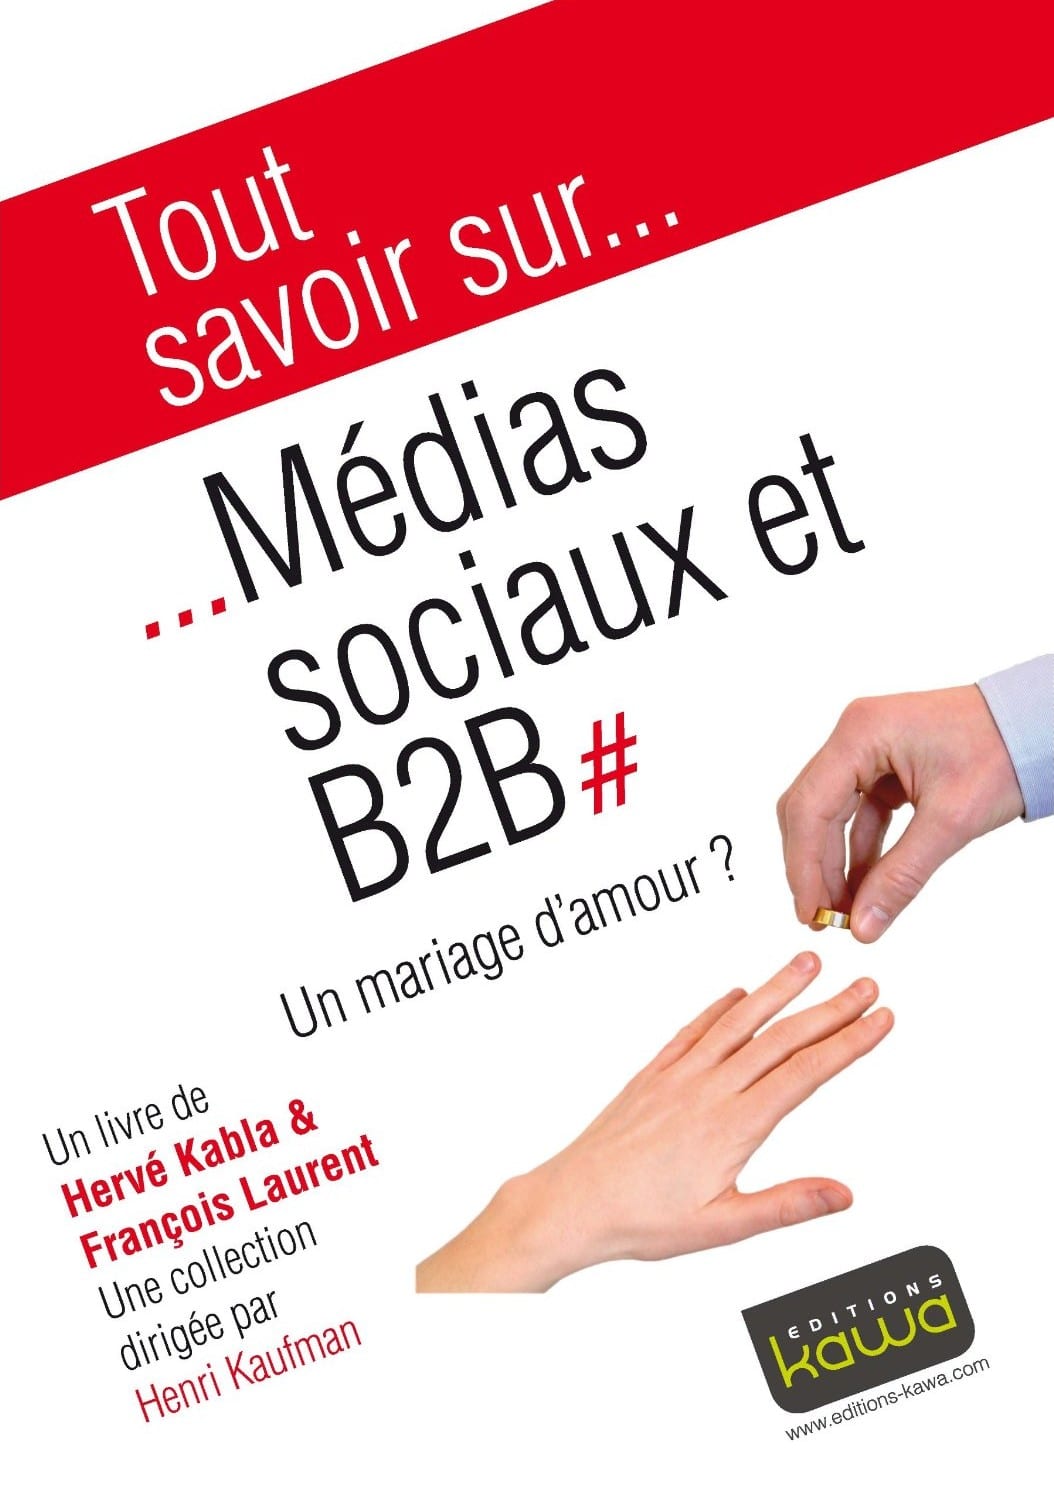 Media Sociaux et B2B, un mariage d'amour ? - Emilie Ogez, Hervé Kabla et Franck Rosenthal 8